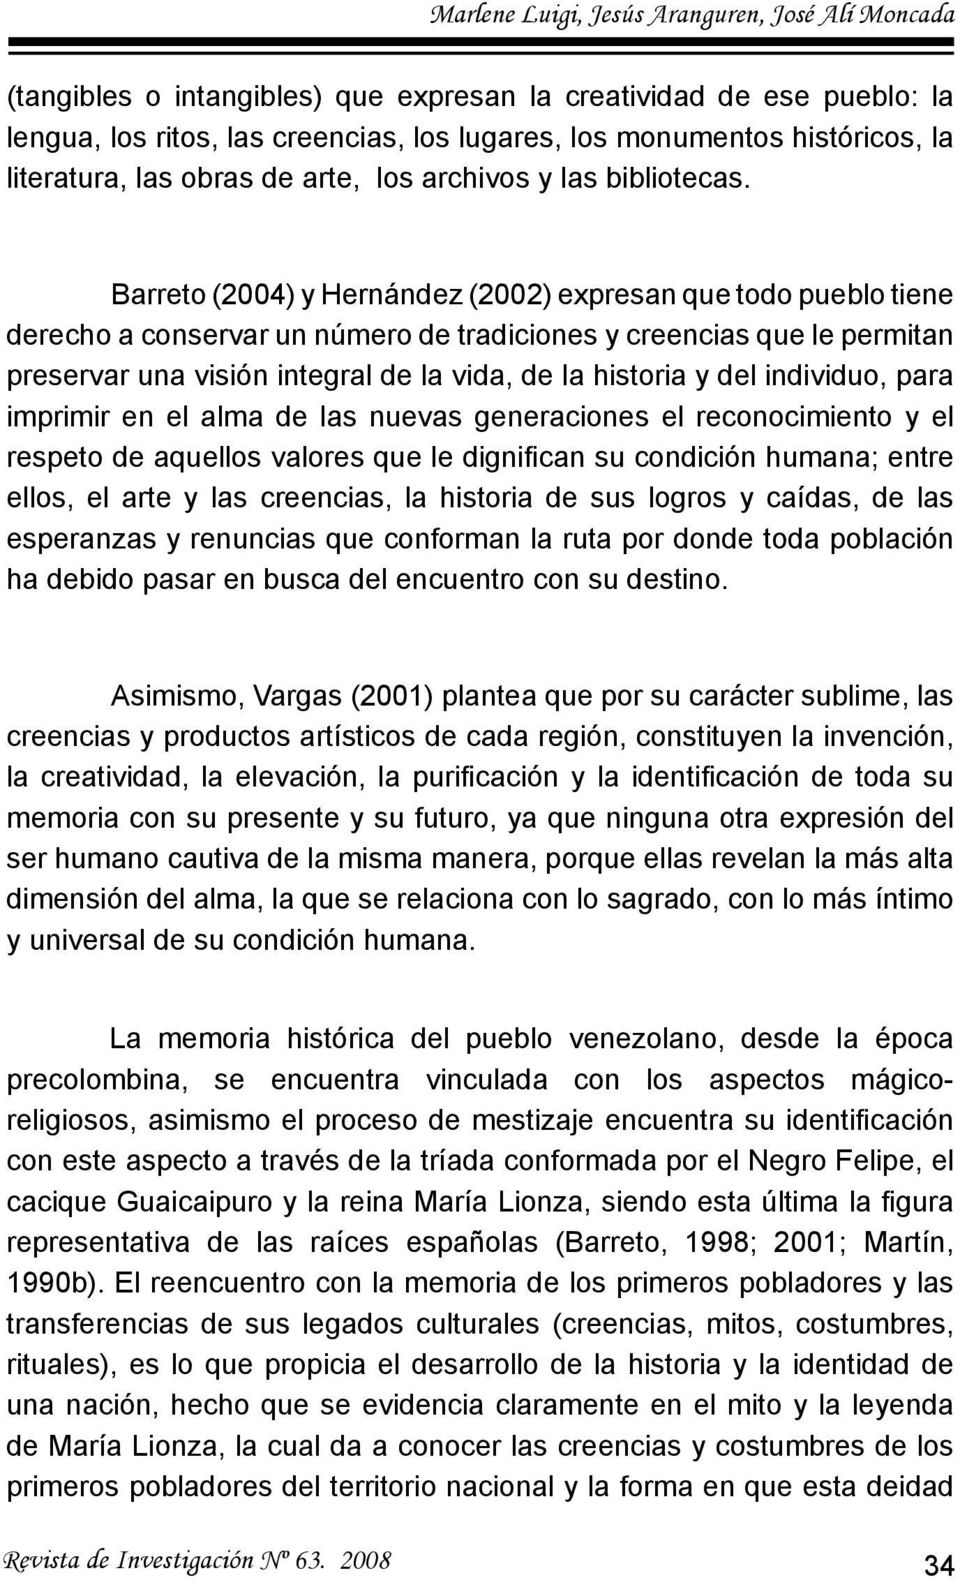 Barreto (2004) y Hernández (2002) expresan que todo pueblo tiene derecho a conservar un número de tradiciones y creencias que le permitan preservar una visión integral de la vida, de la historia y